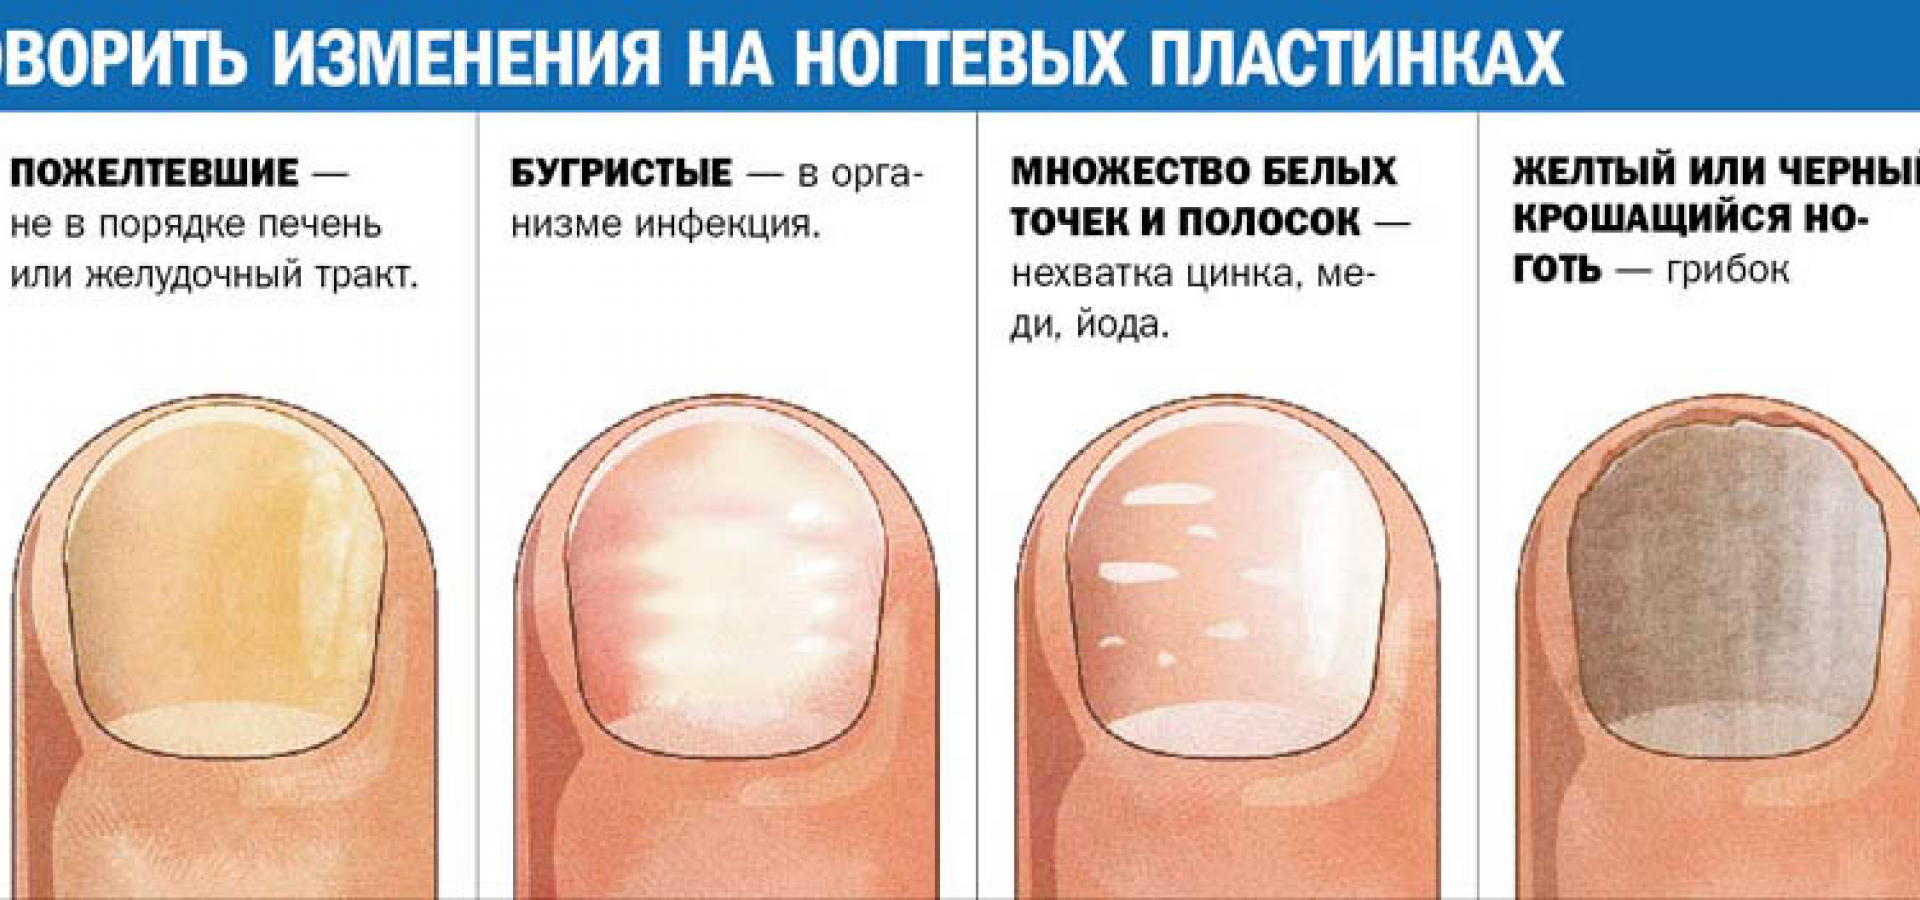 Почему слоятся ногти на ногах: советы профессионального подолога в минске